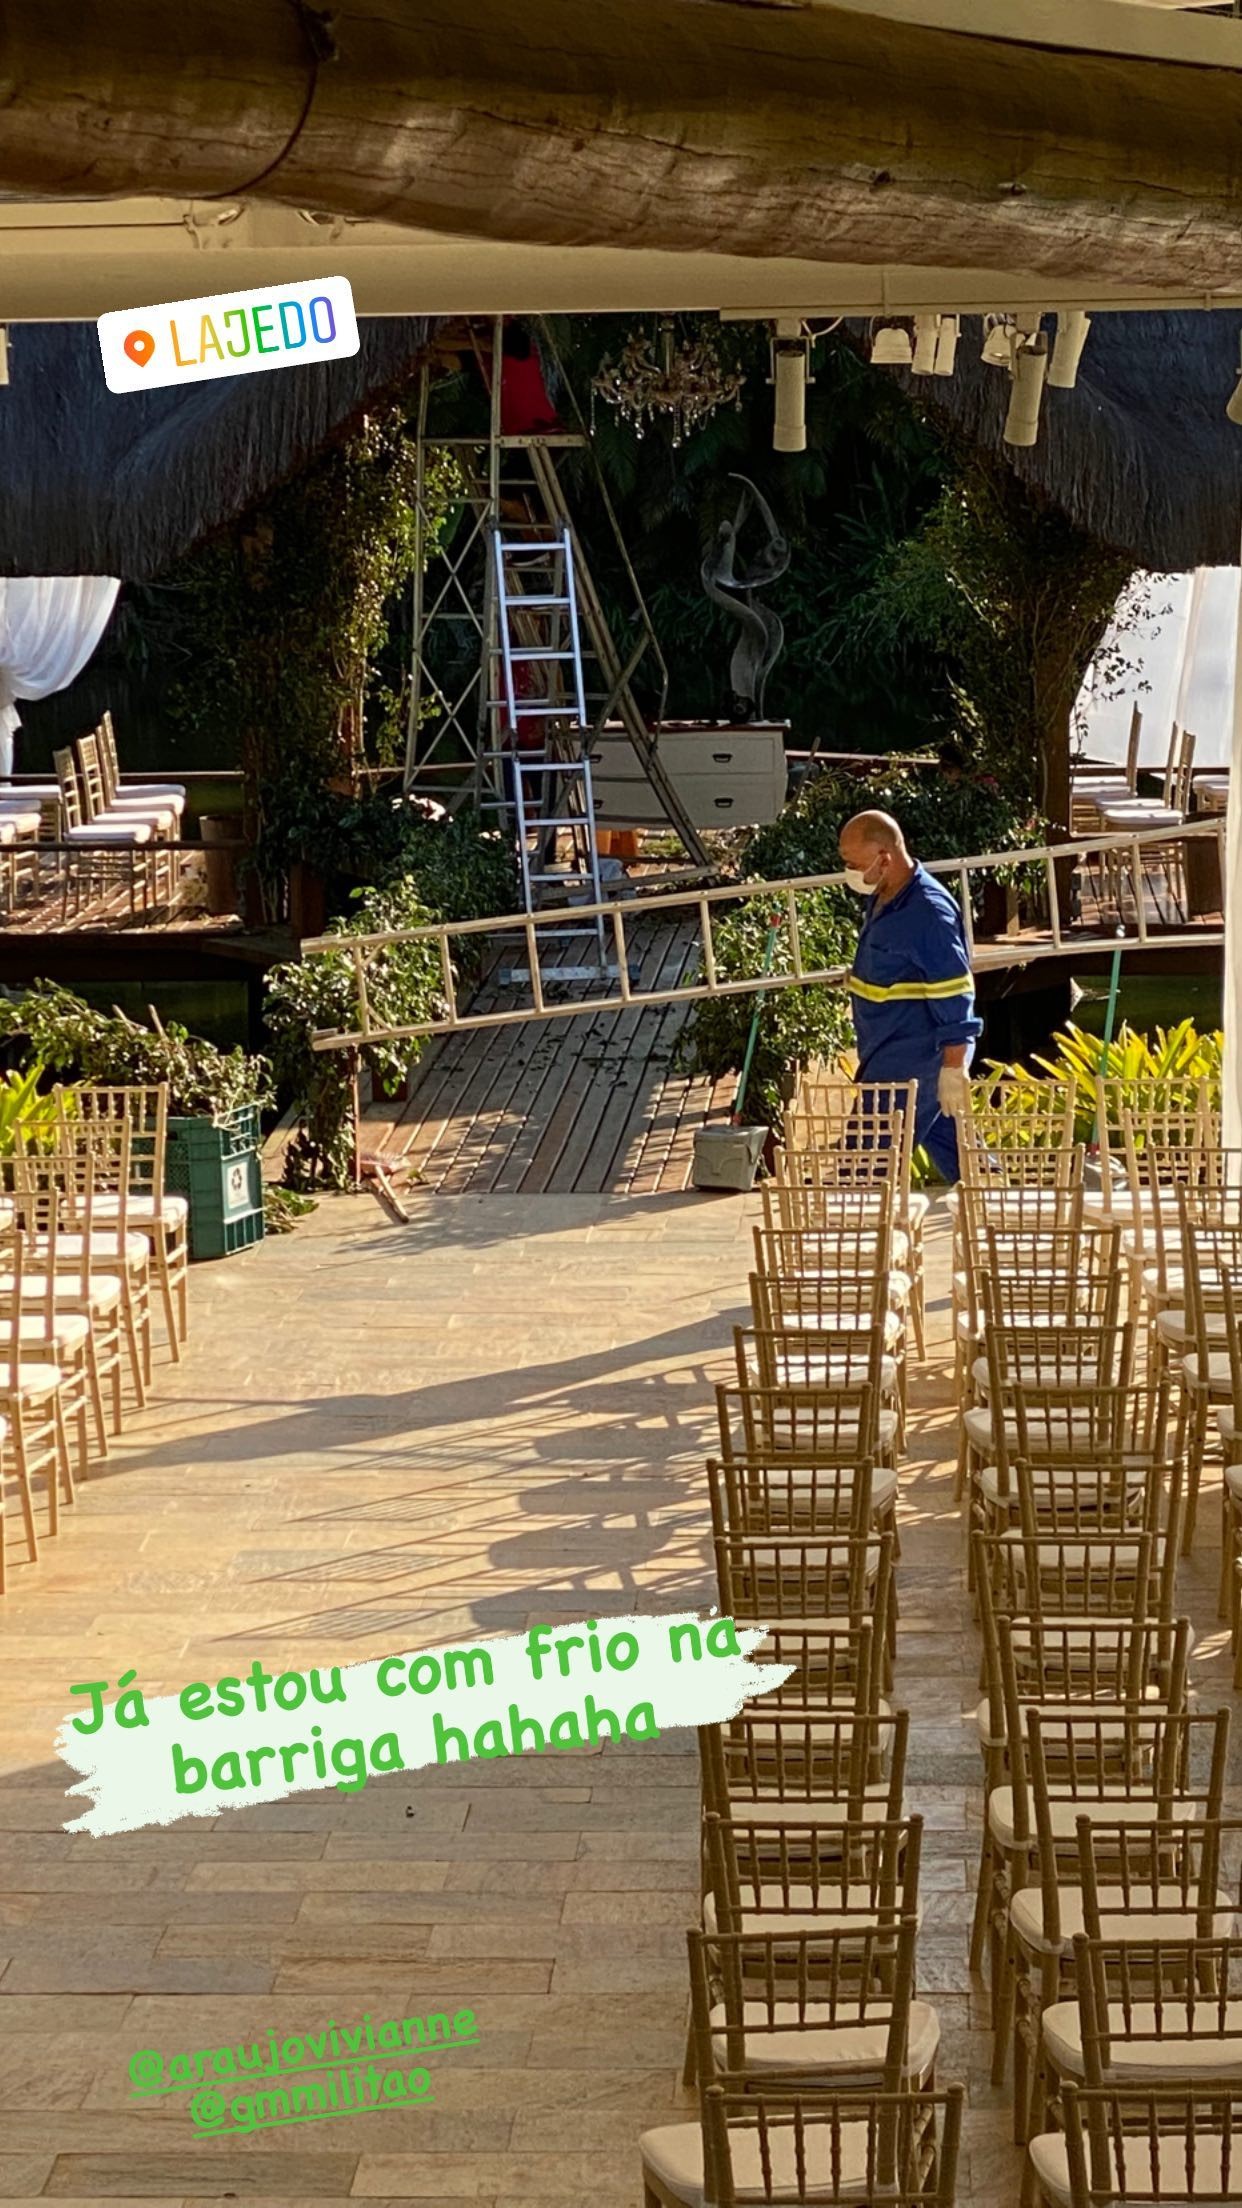 Local do casamento de Viviane Araújo e Guilherme Militão (Foto: Reprodução/Instagram)